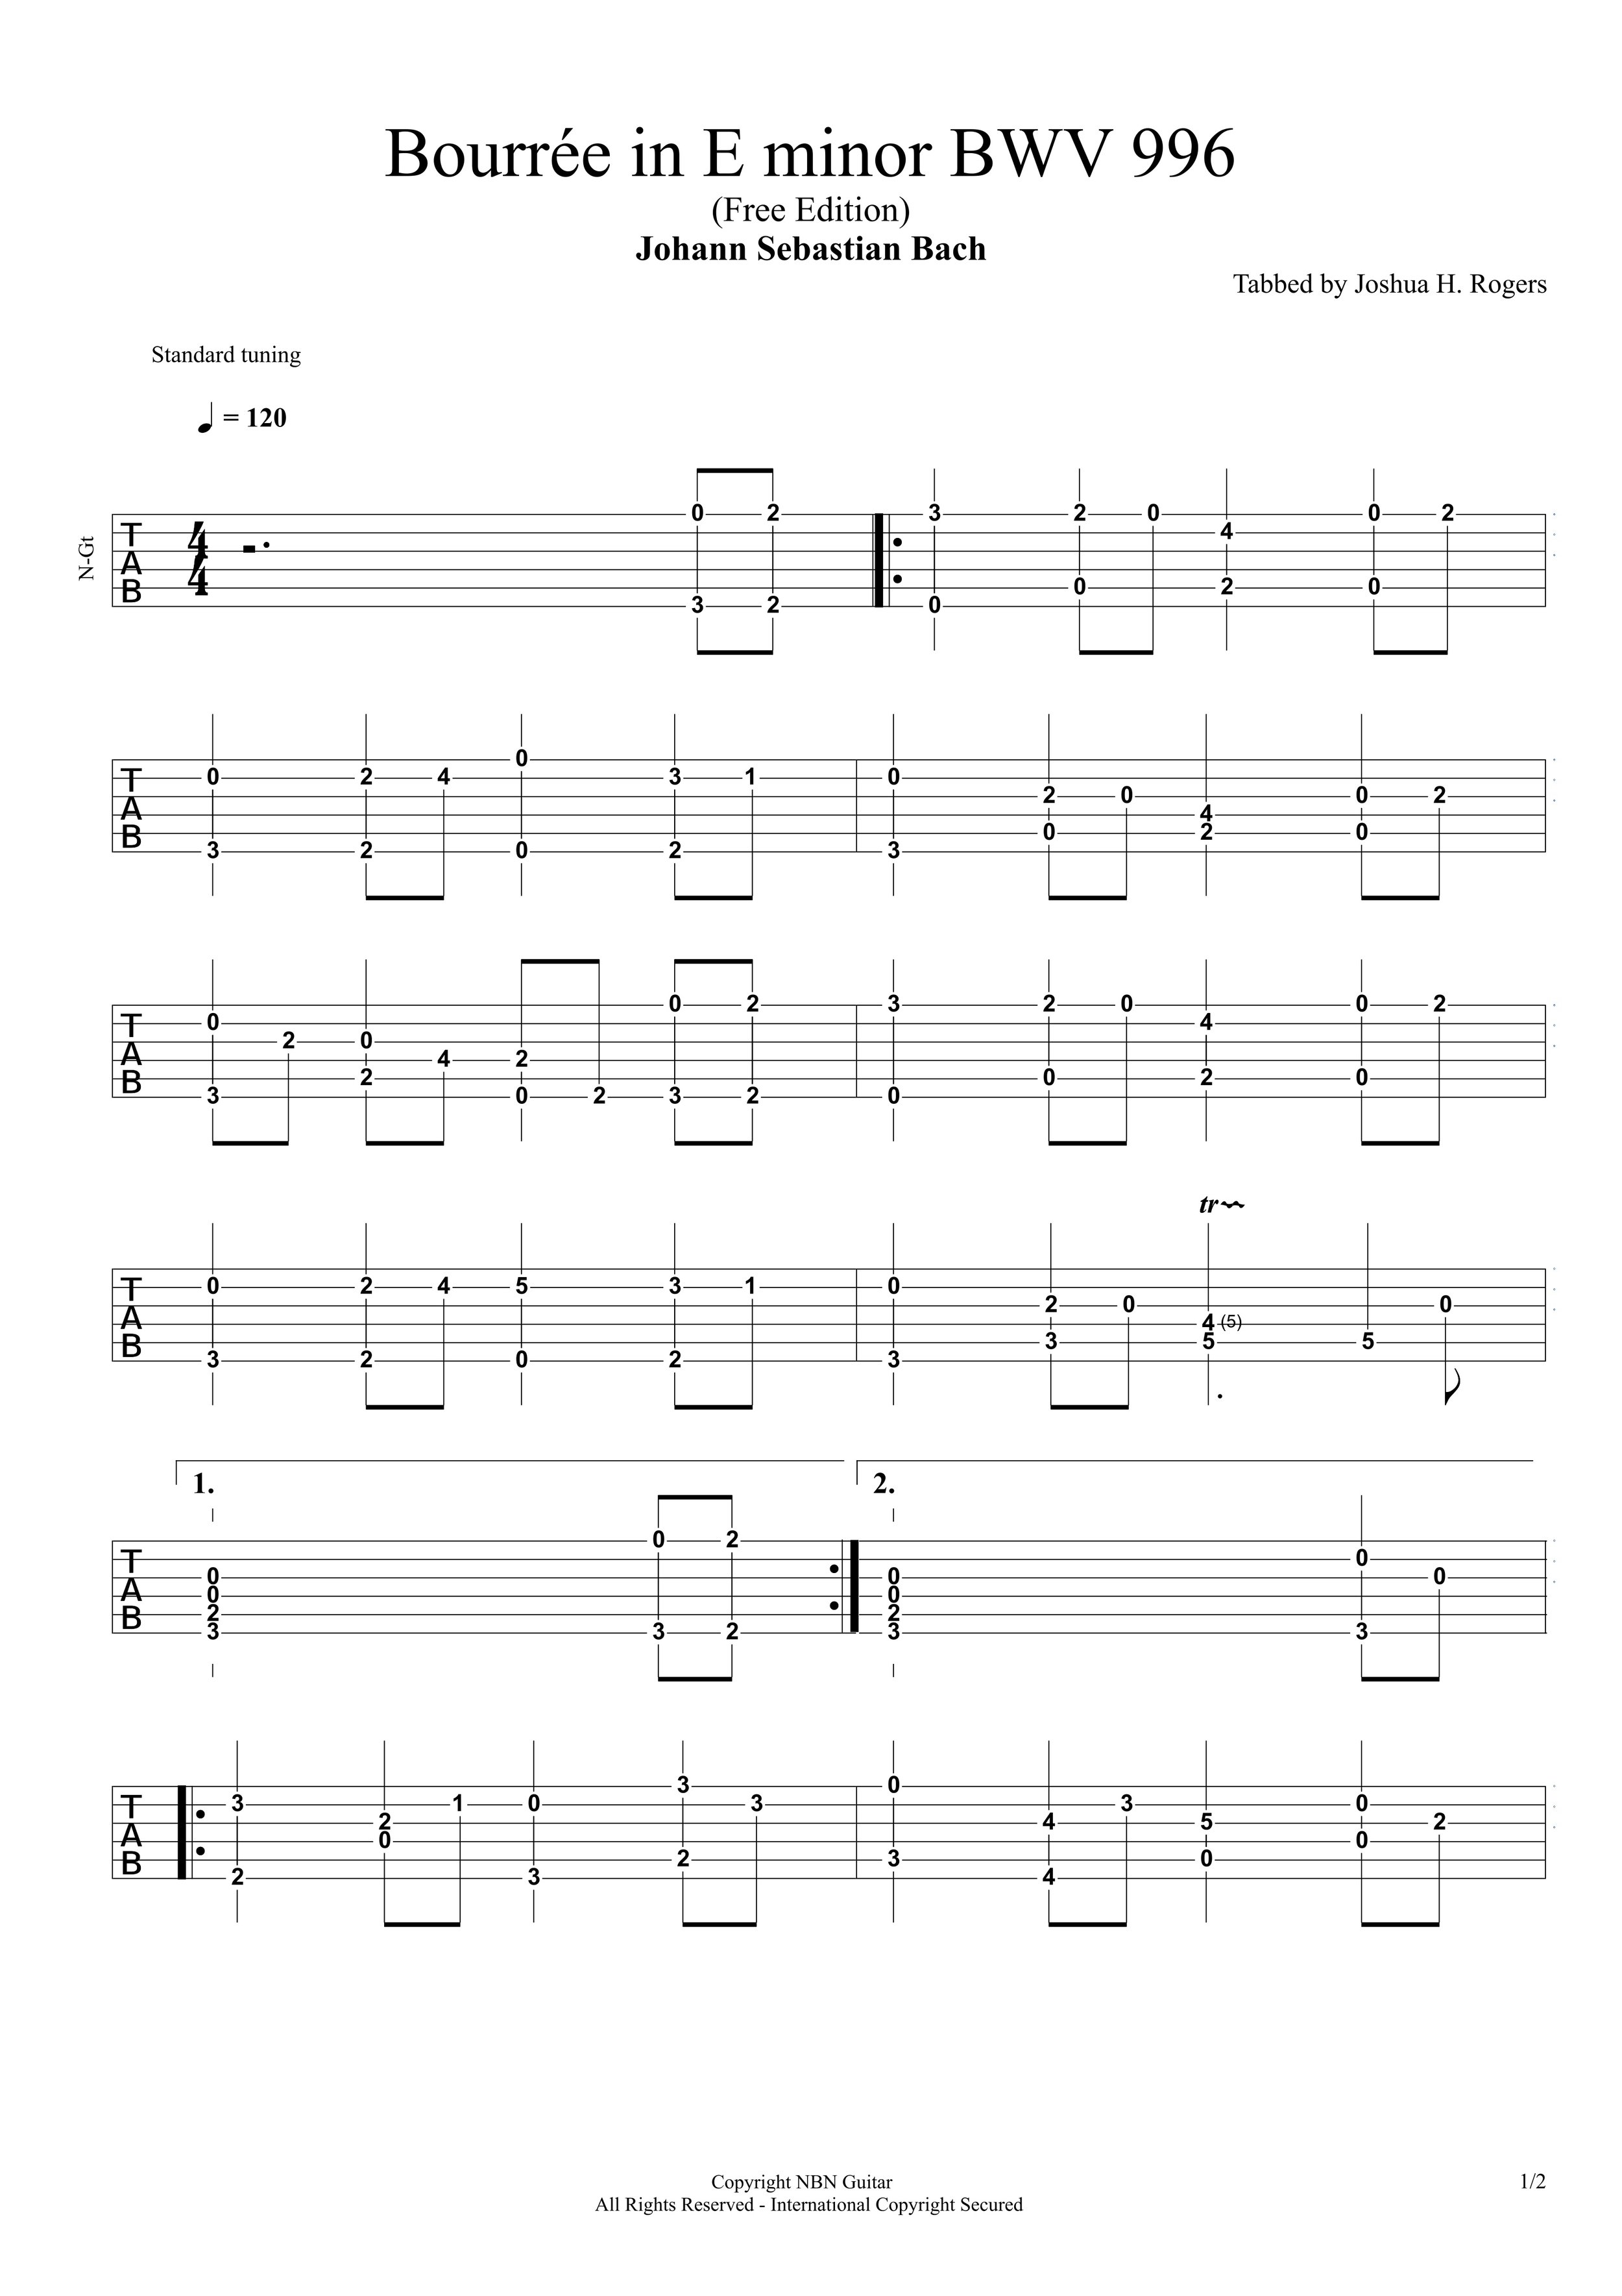 Bourrée in E minor BWV 996 (Tabs)-p3.jpg